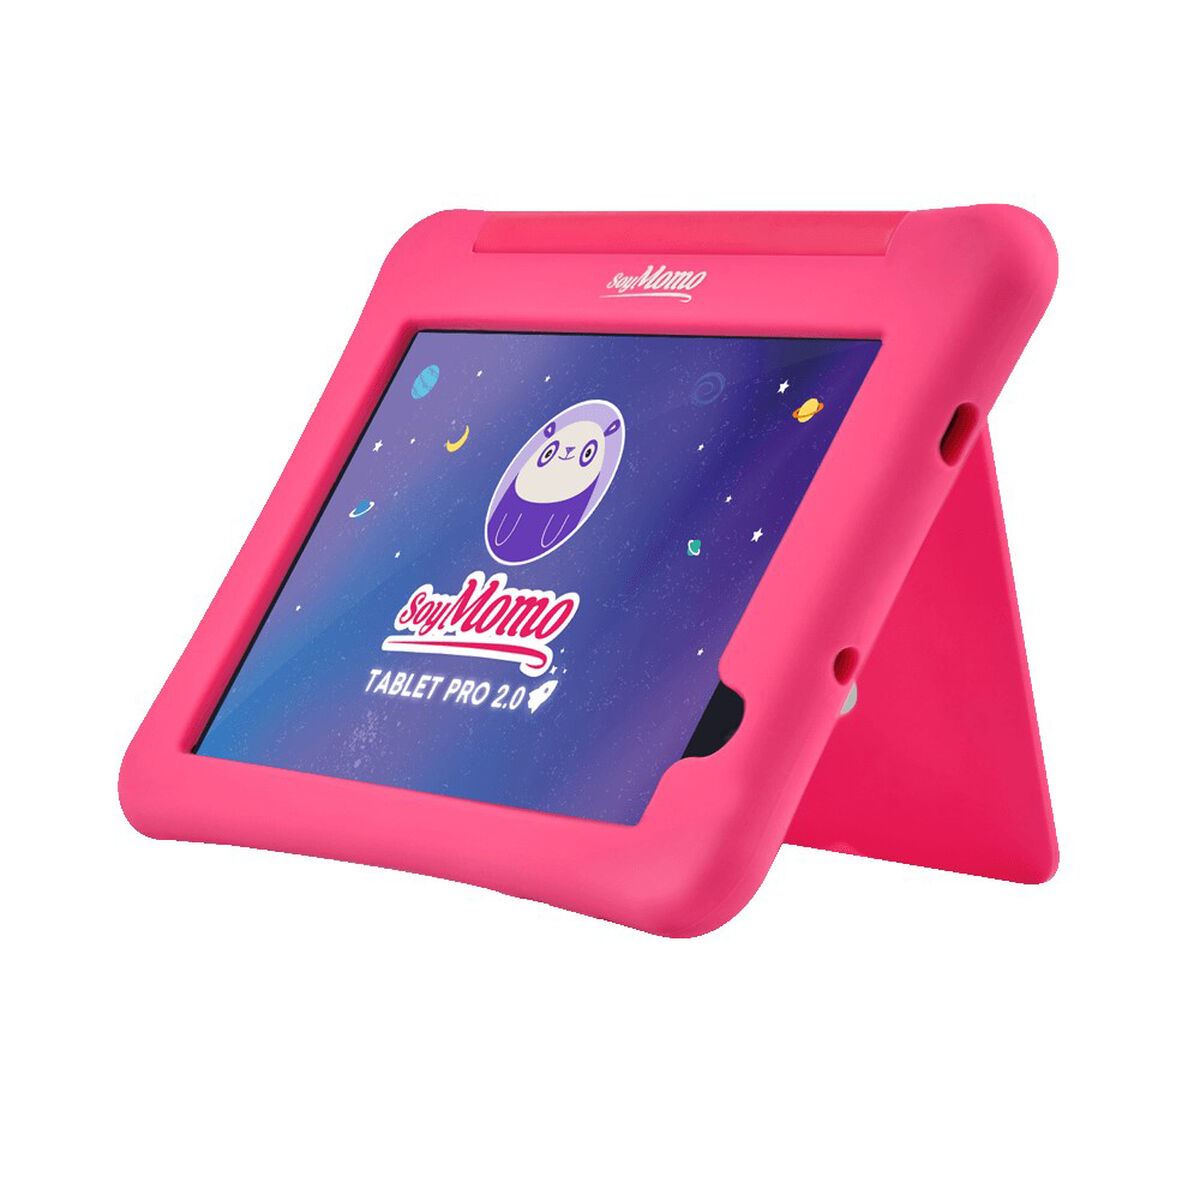 Tablet SoyMomo Control Parental Pro 2.0 Octa Core 4GB 64GB 8" Rosado